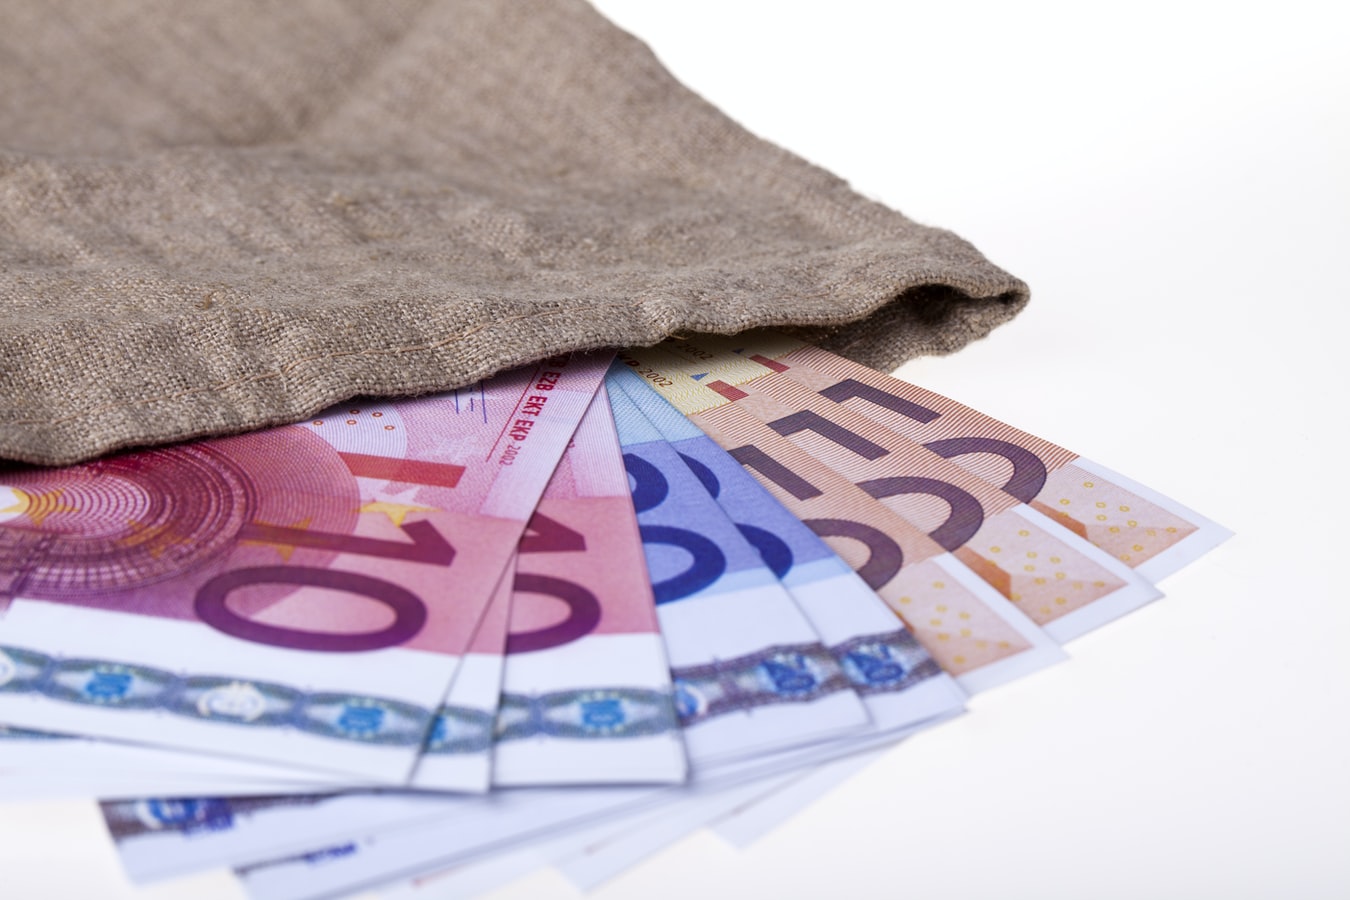 Solo Ginebra y otros dos cantones de Suiza tienen salario mínimo fijado. (Foto Prensa Libre: Unplash)